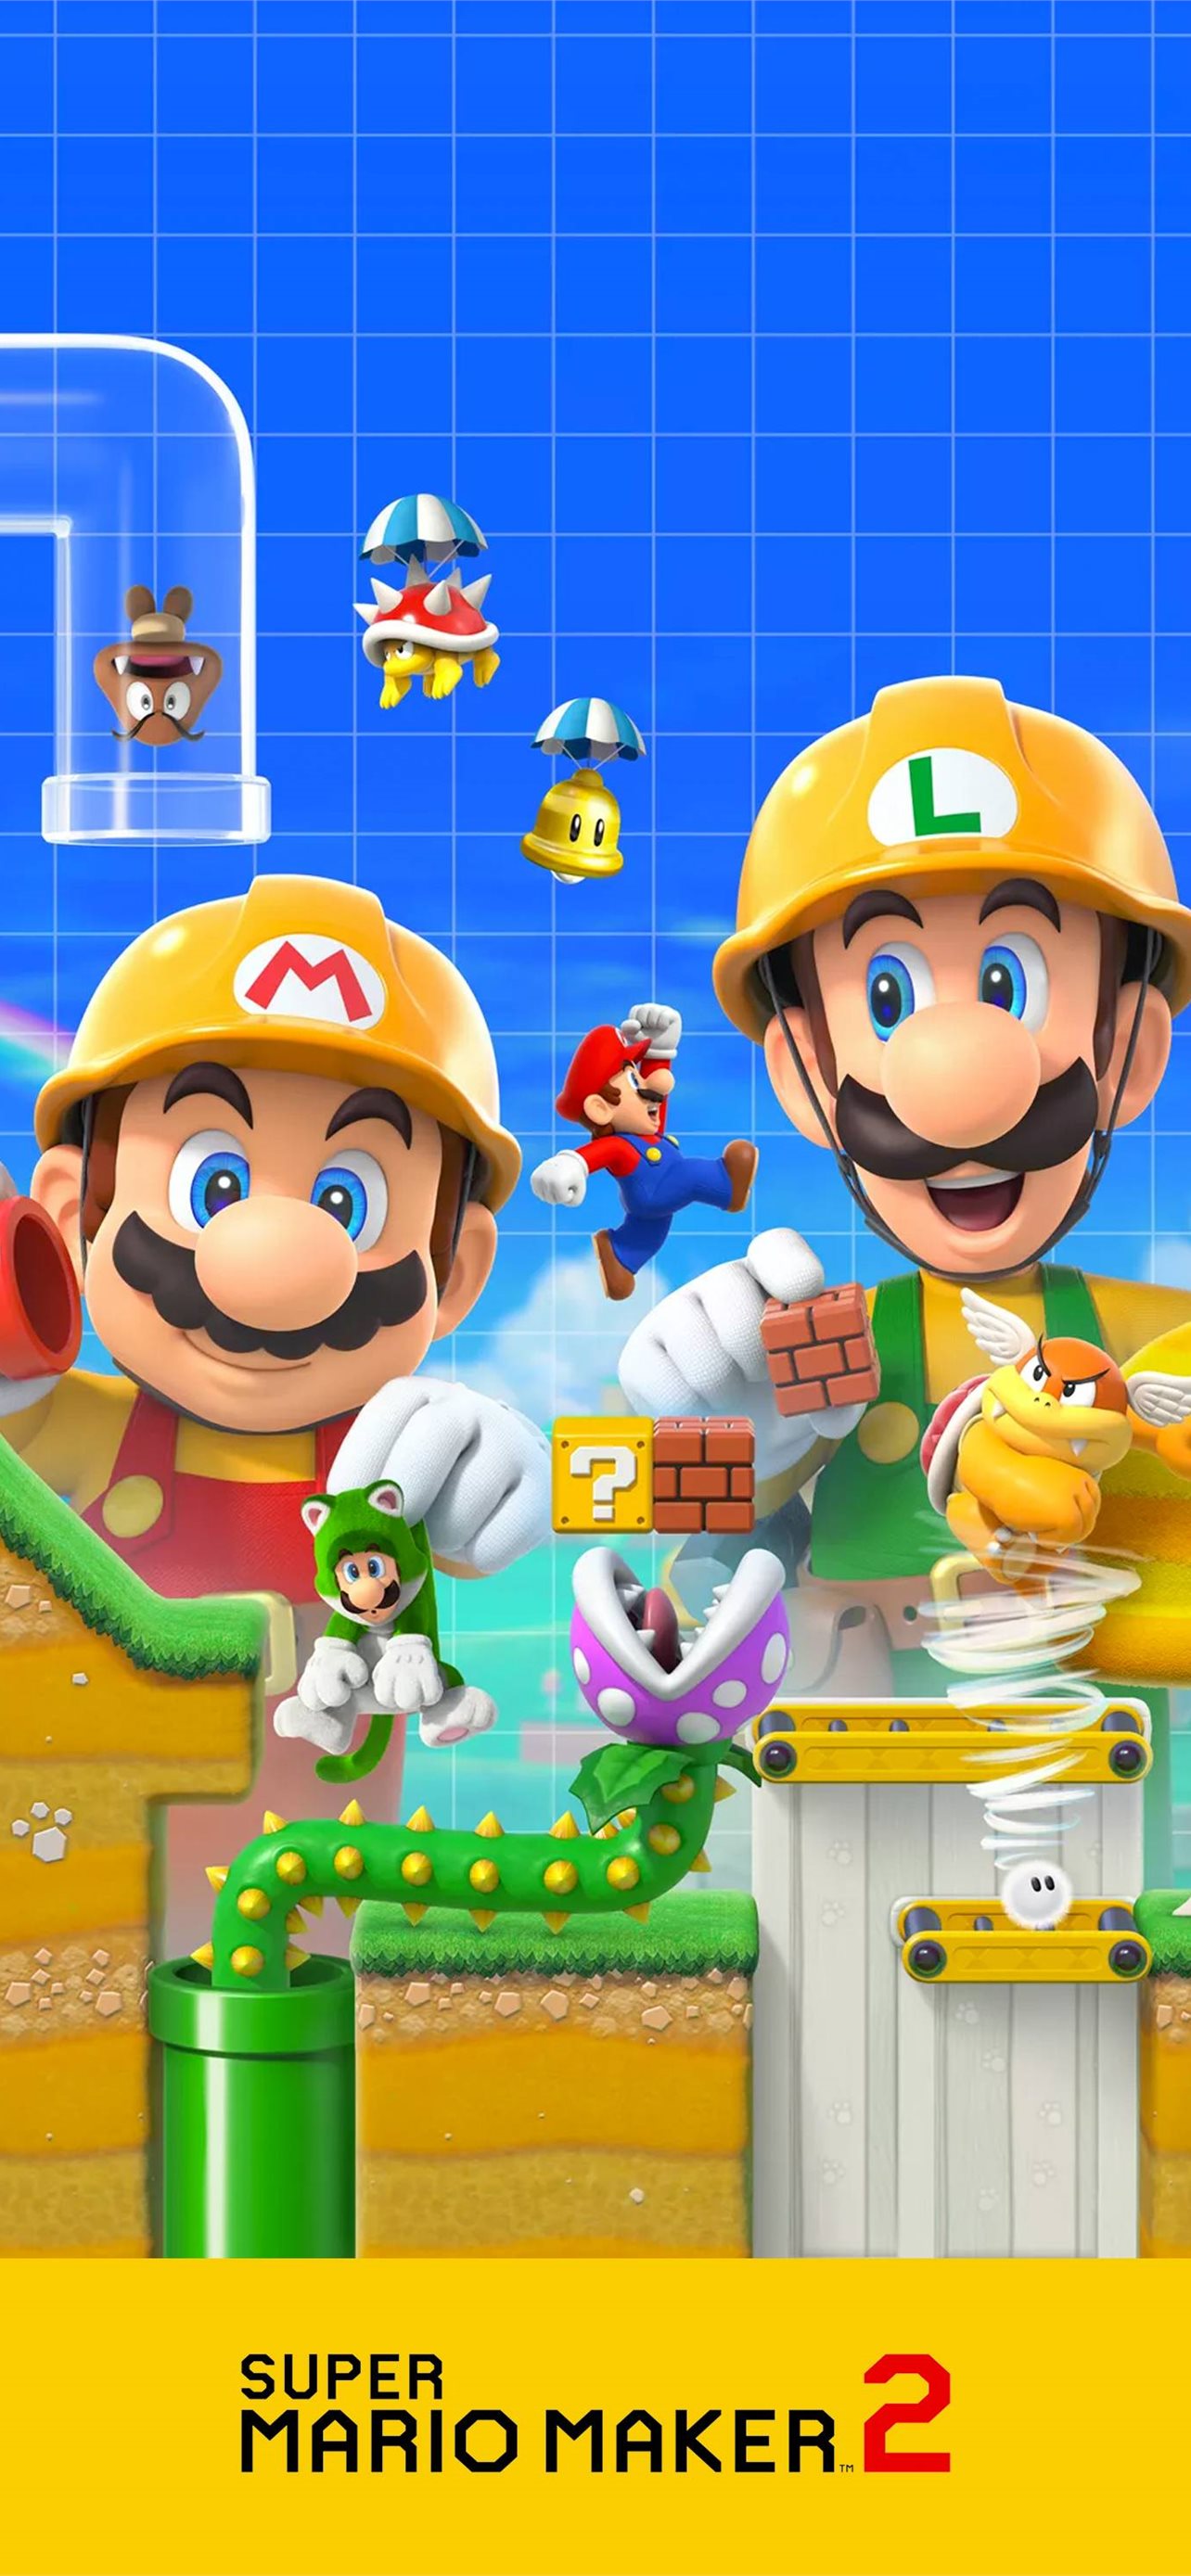 Super Mario Bros Background WQHD 1440P Wallpaper | Pixelz